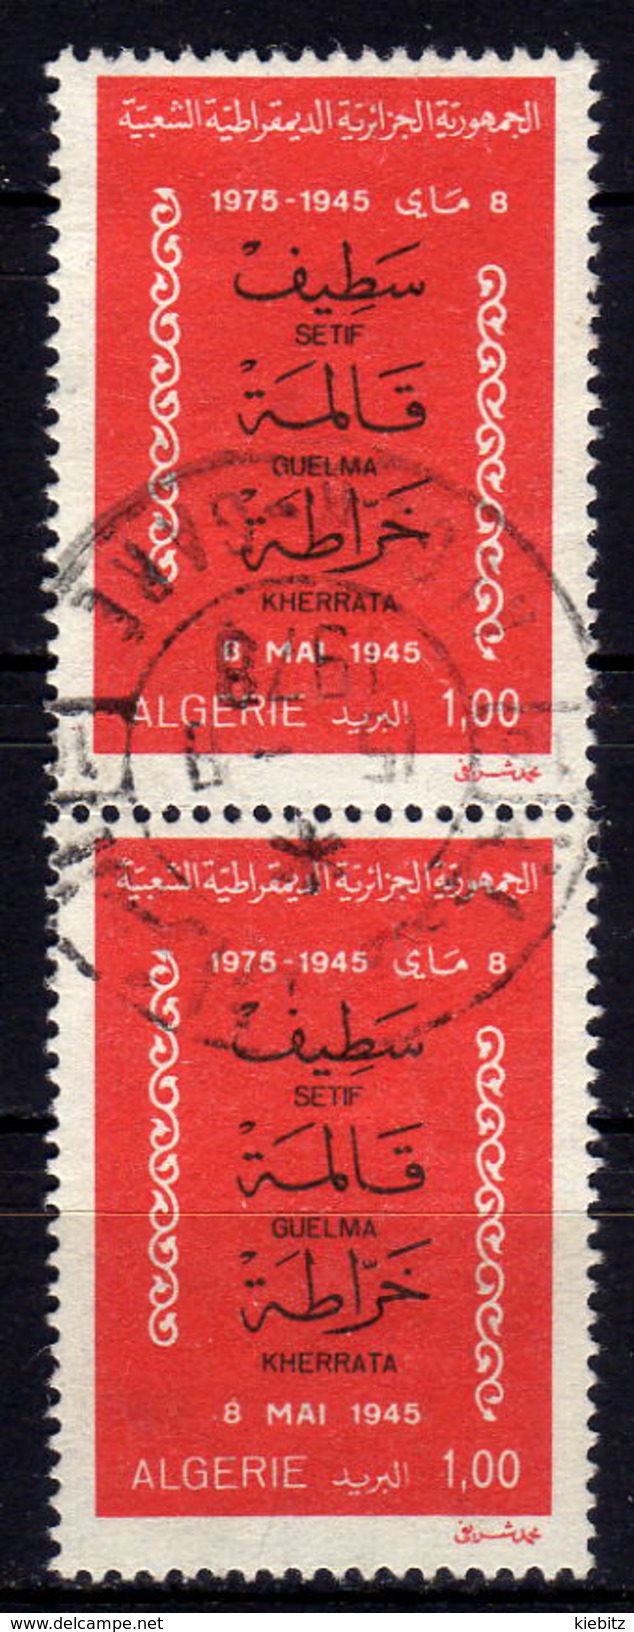 ALGERIEN 1975 - MiNr: 667 Paar  Used - Algerije (1962-...)